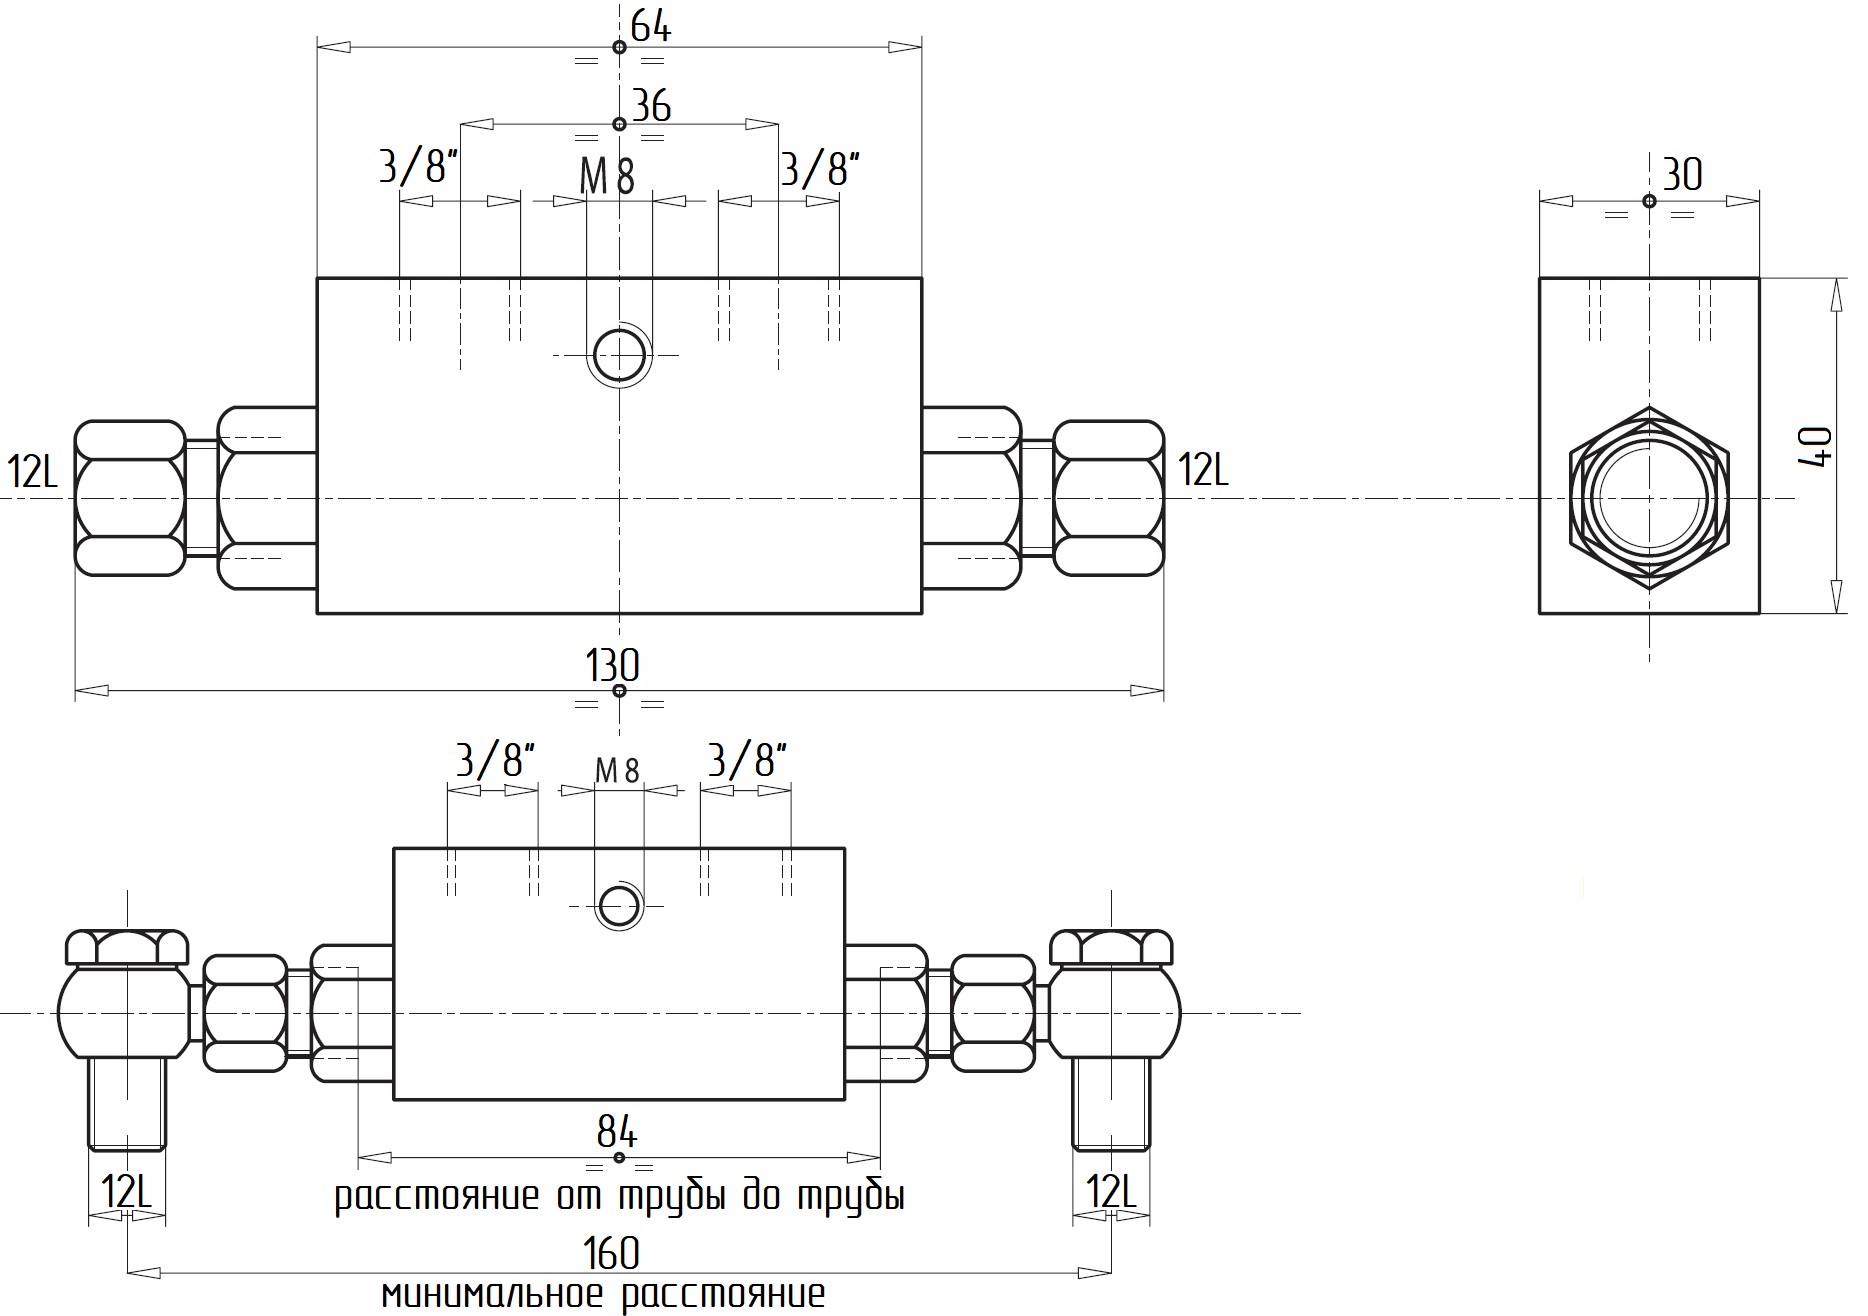 Гидравлическая схема обозначения V0110-VBPDE 3/8 L 2 C.EX.C. - двусторонний гидрозамок